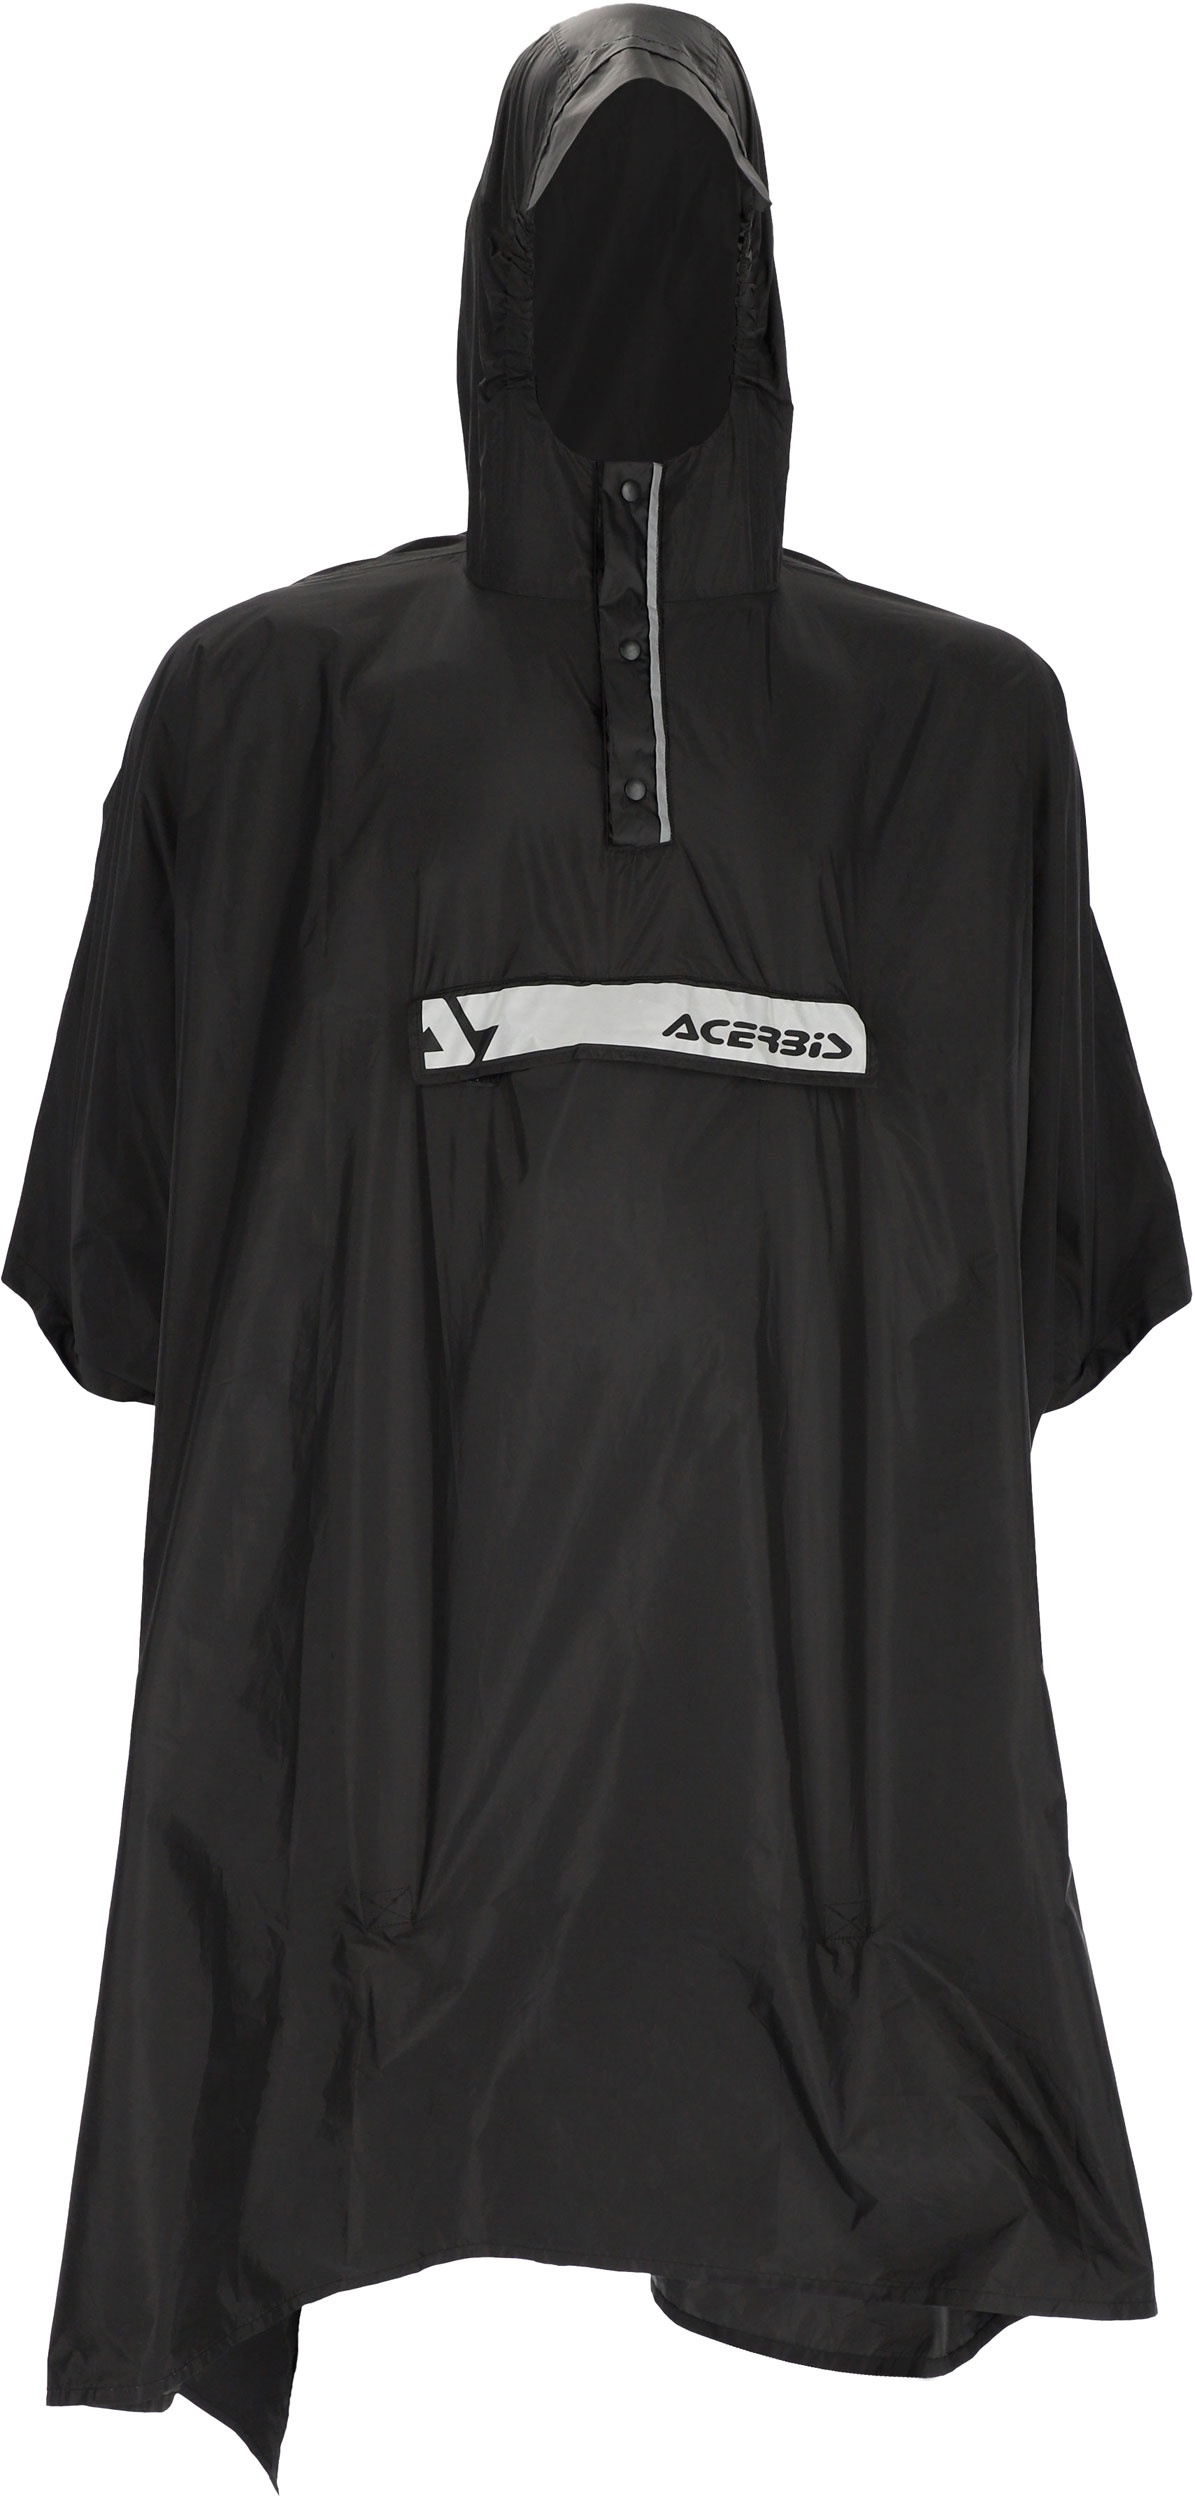 Acerbis Poncho, couverture de pluie - Noir - L/XL